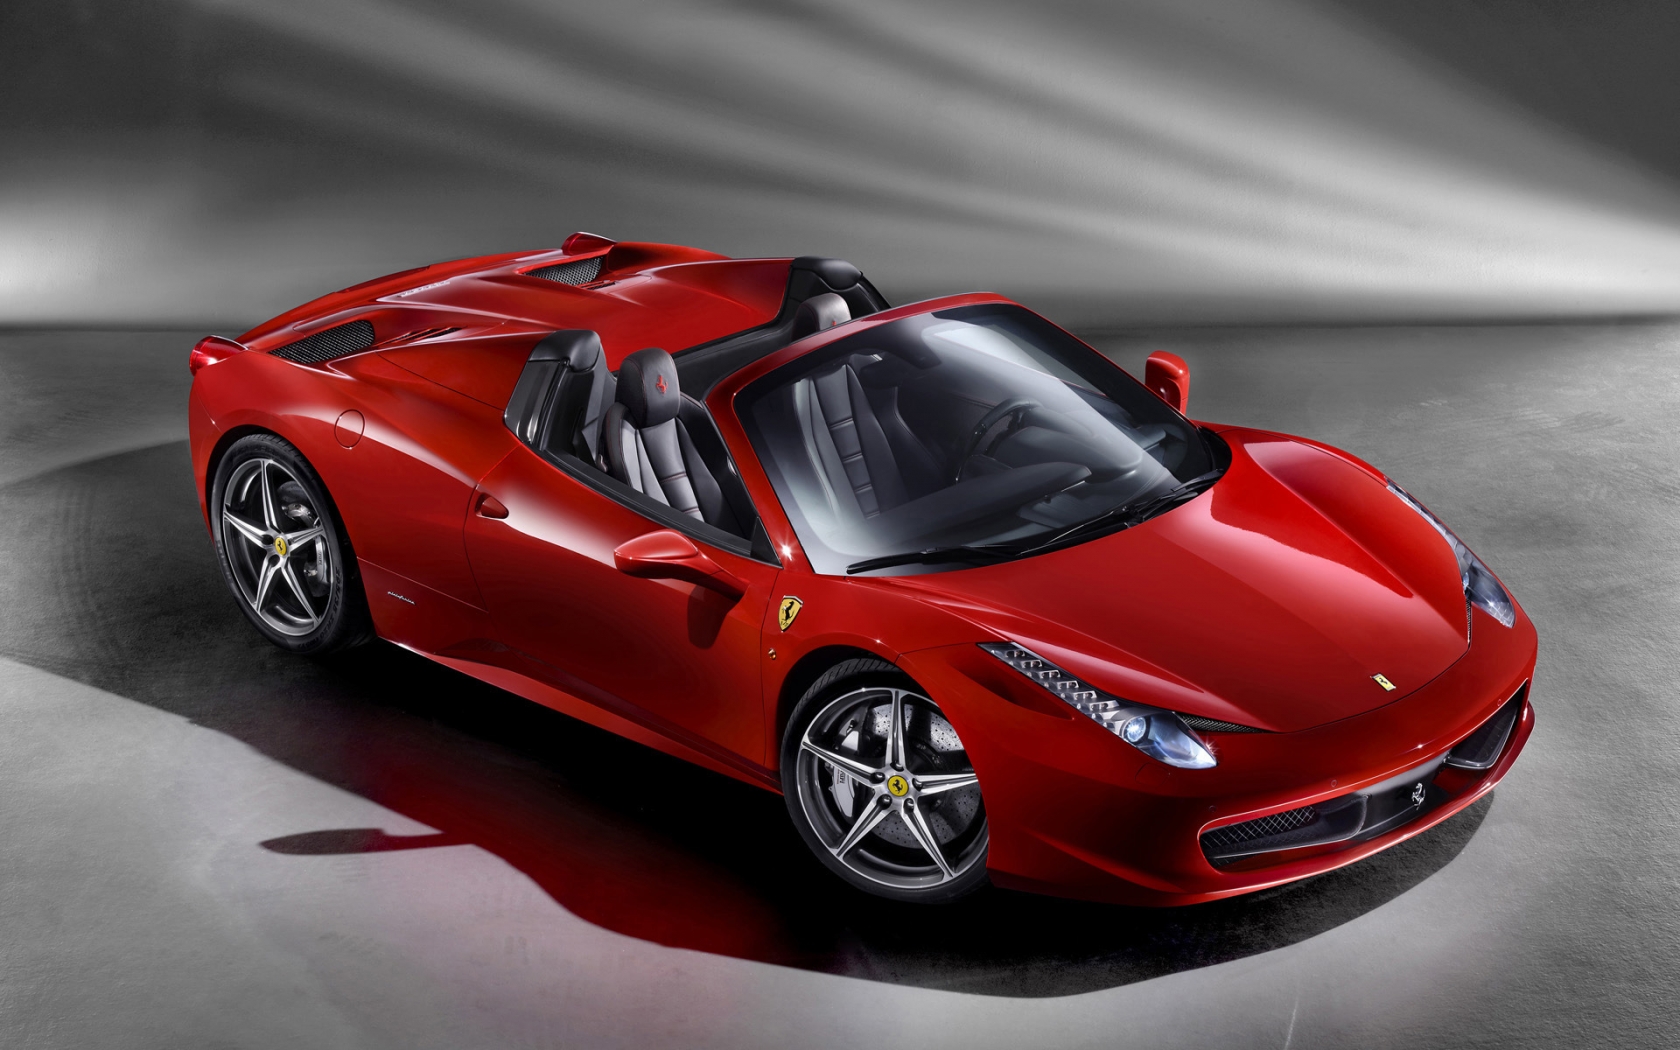 2012 Ferrari 458 Spider Studio for 1680 x 1050 widescreen resolution